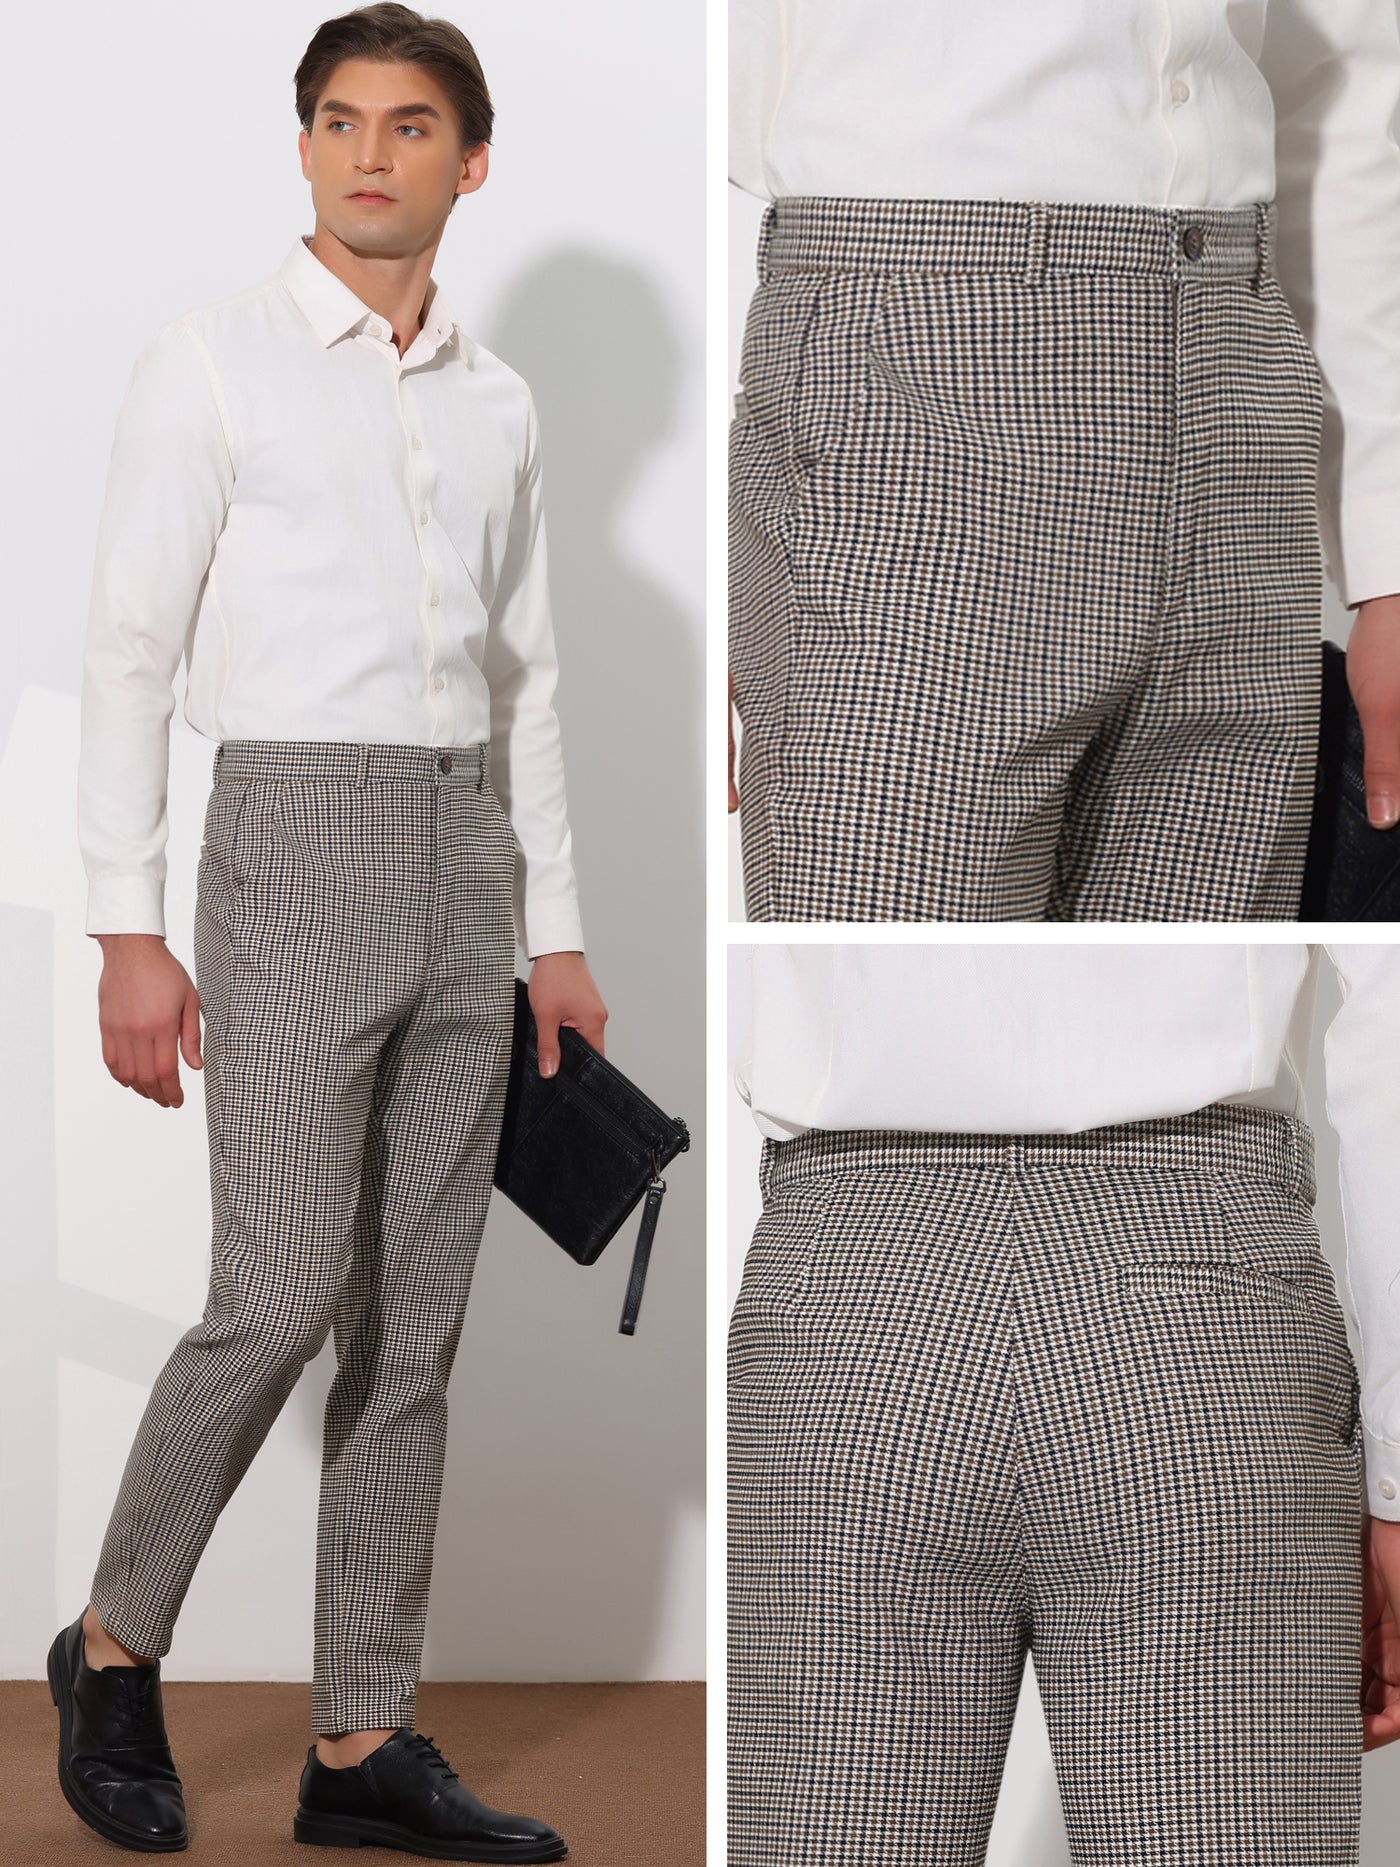 Bublédon Plaid Pants for Men's Flat Front Contrasting Colors Plaids Pattern Business Trousers